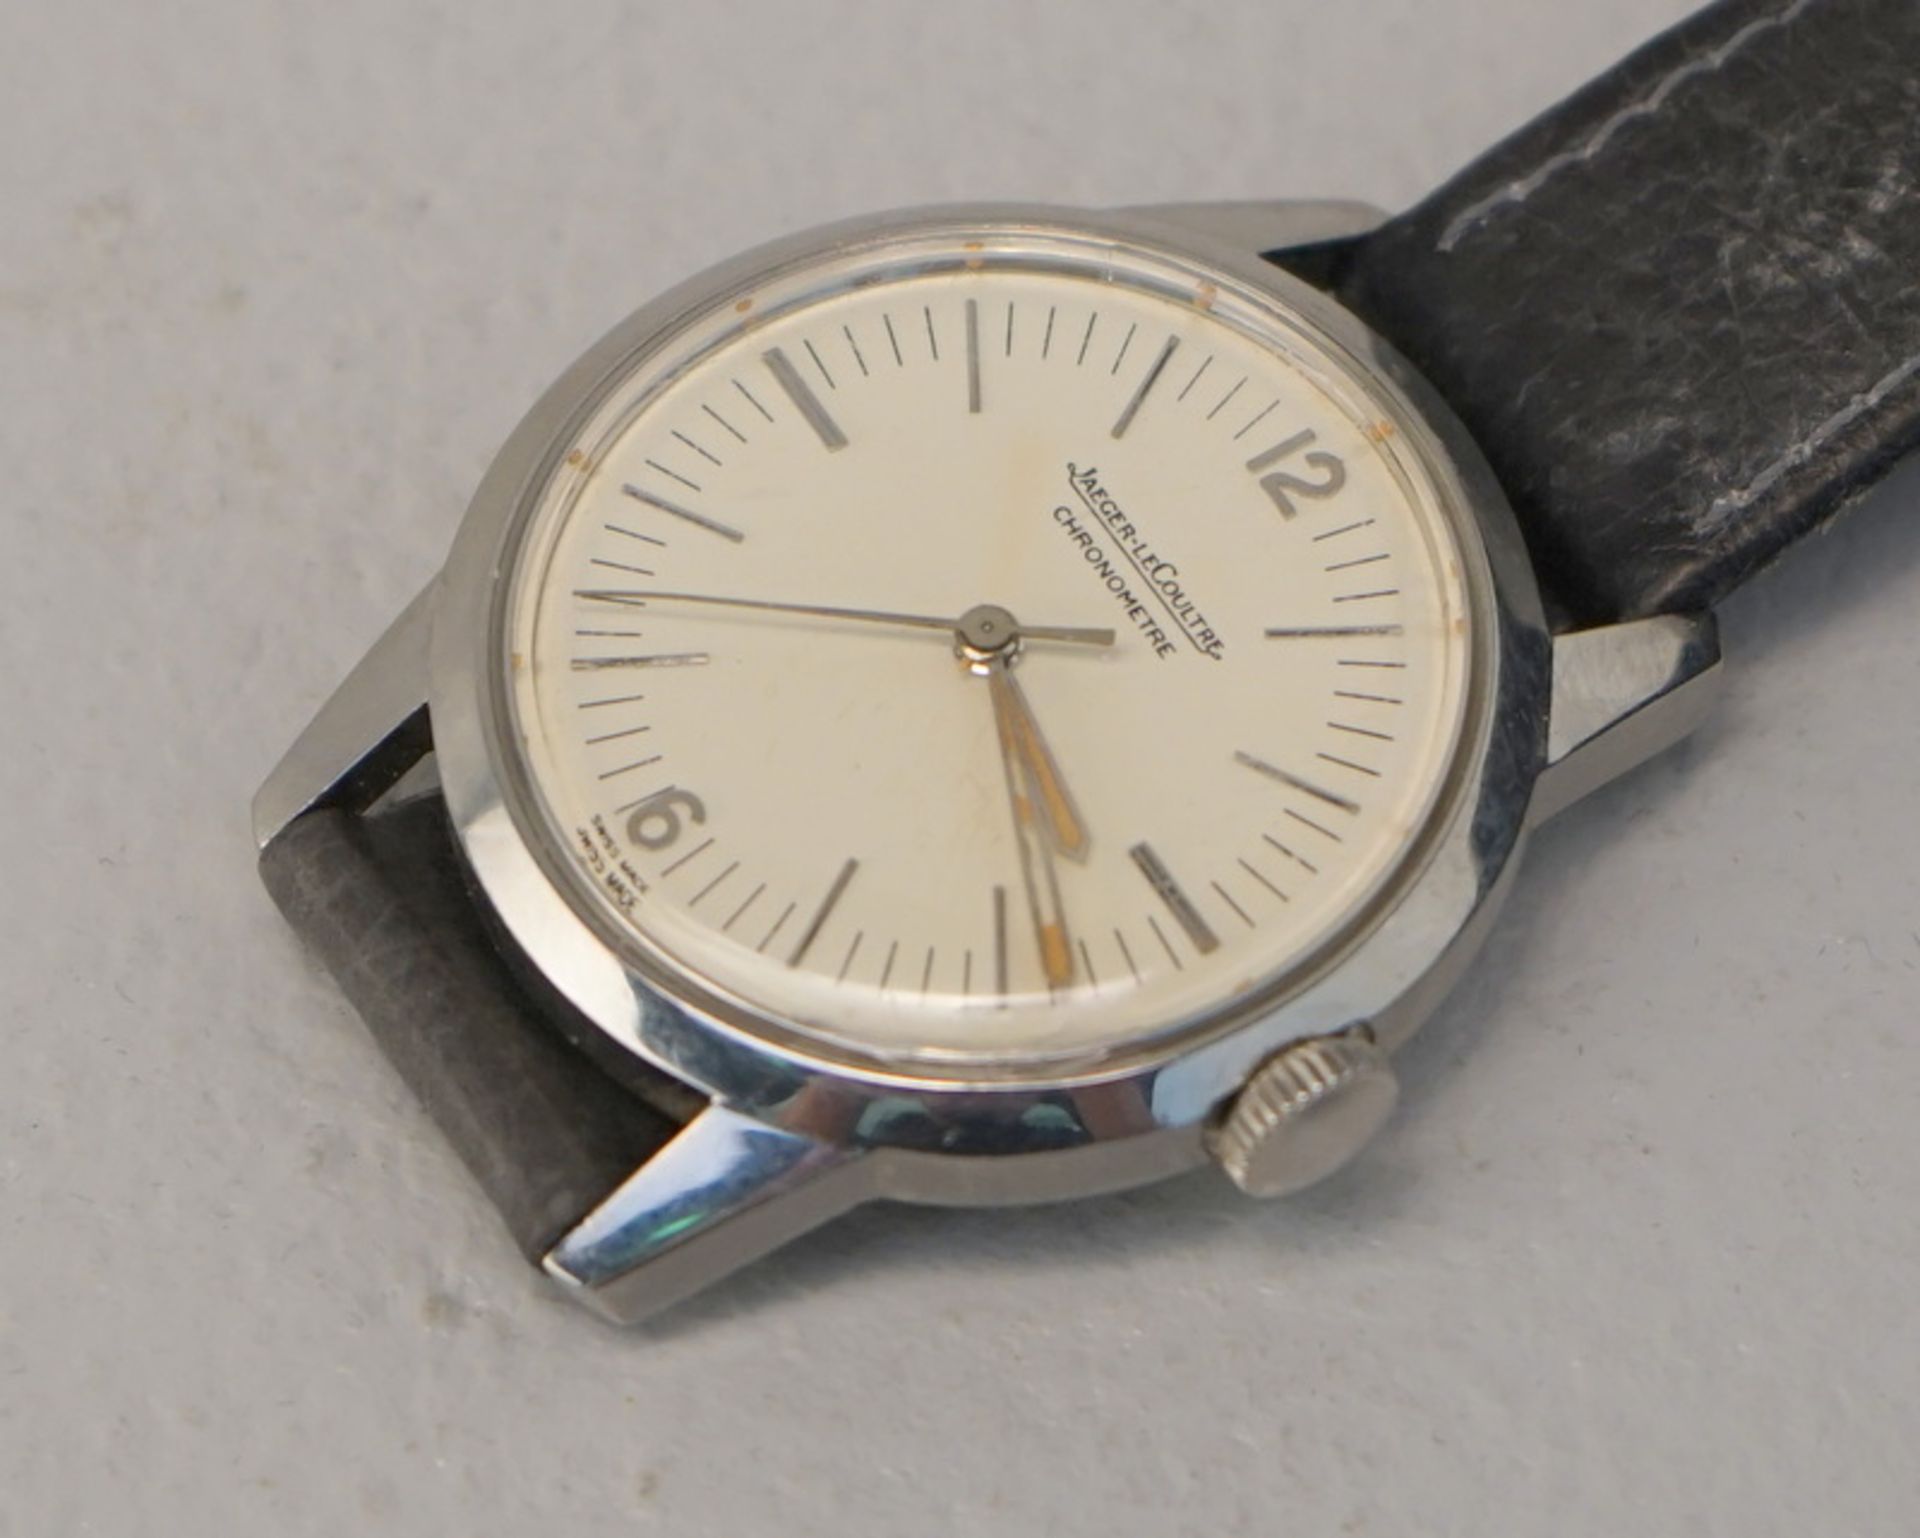 Jaeger Le Coultre, Le Sentier Schweitz: Chronometre, E168 Geophysic, um 1958 f. - Image 4 of 5